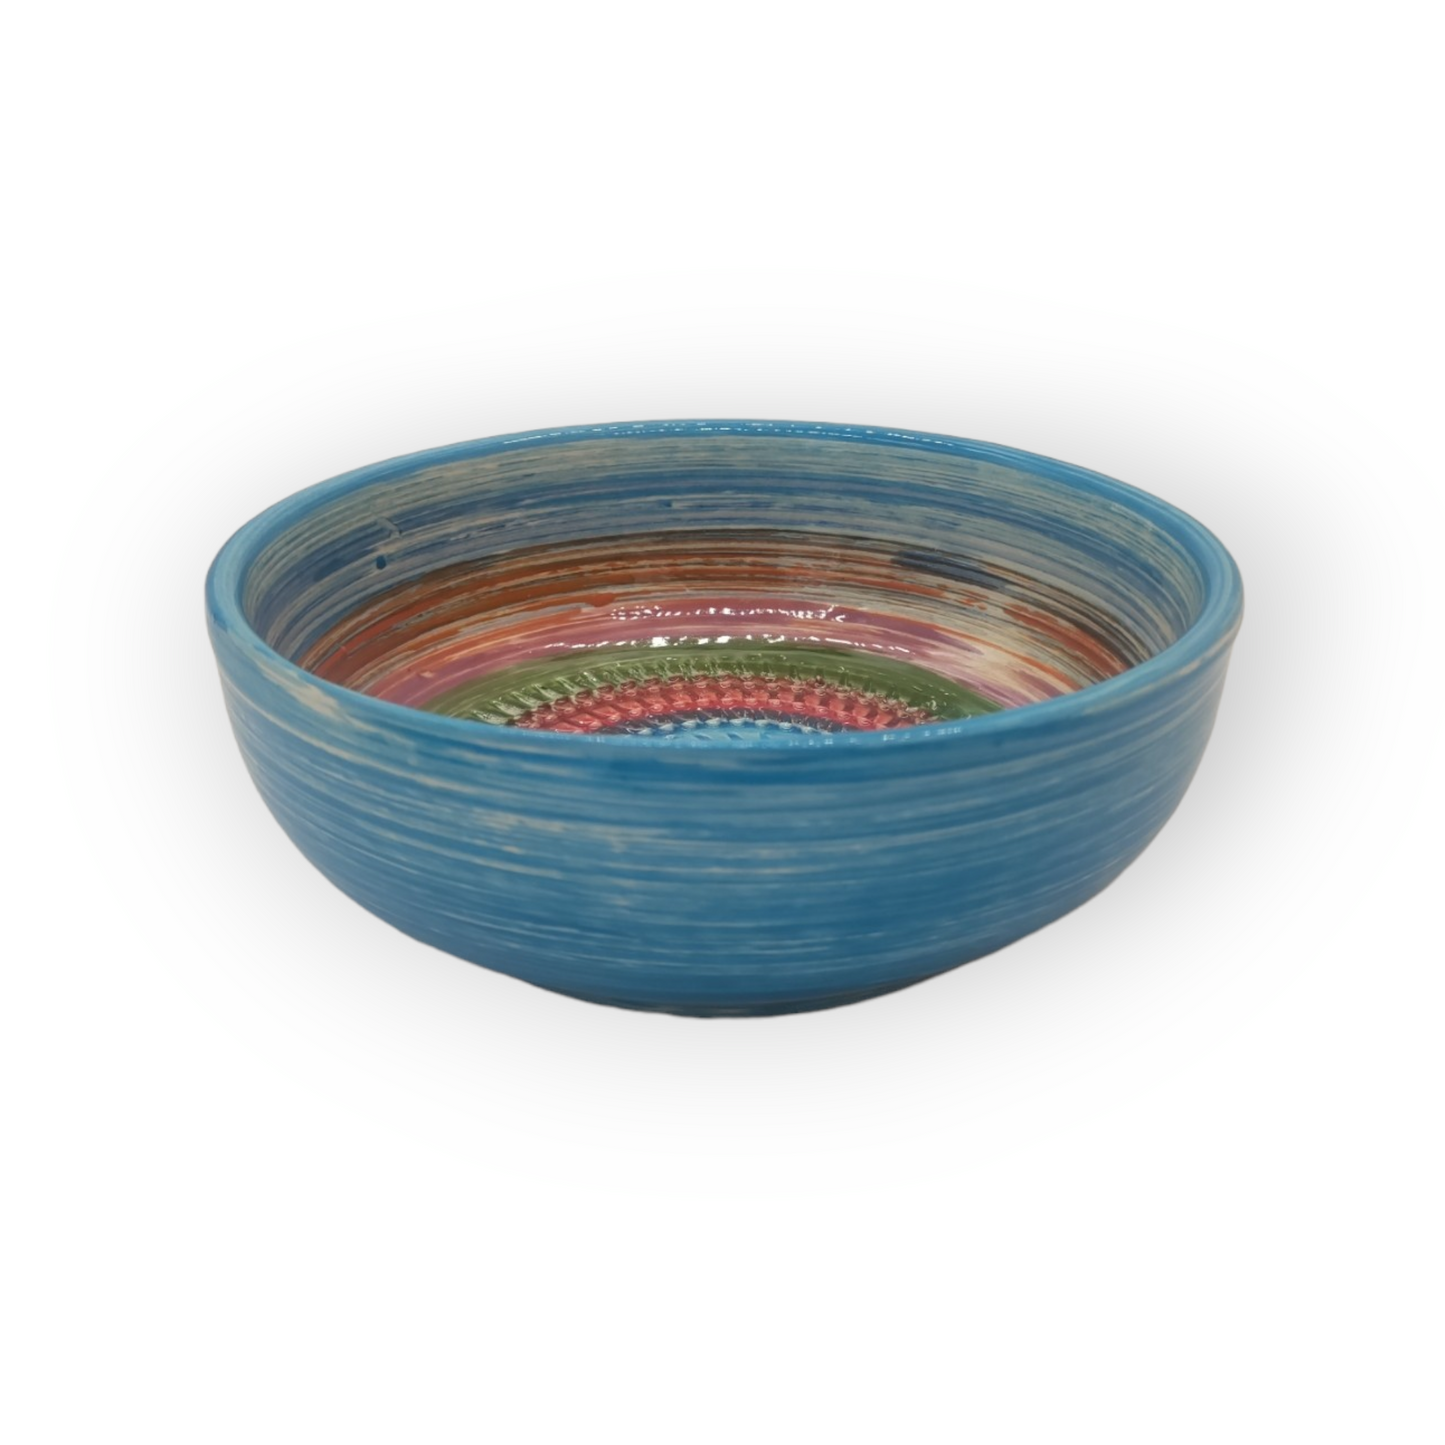 Sol Ceramic Food Grating Bowl